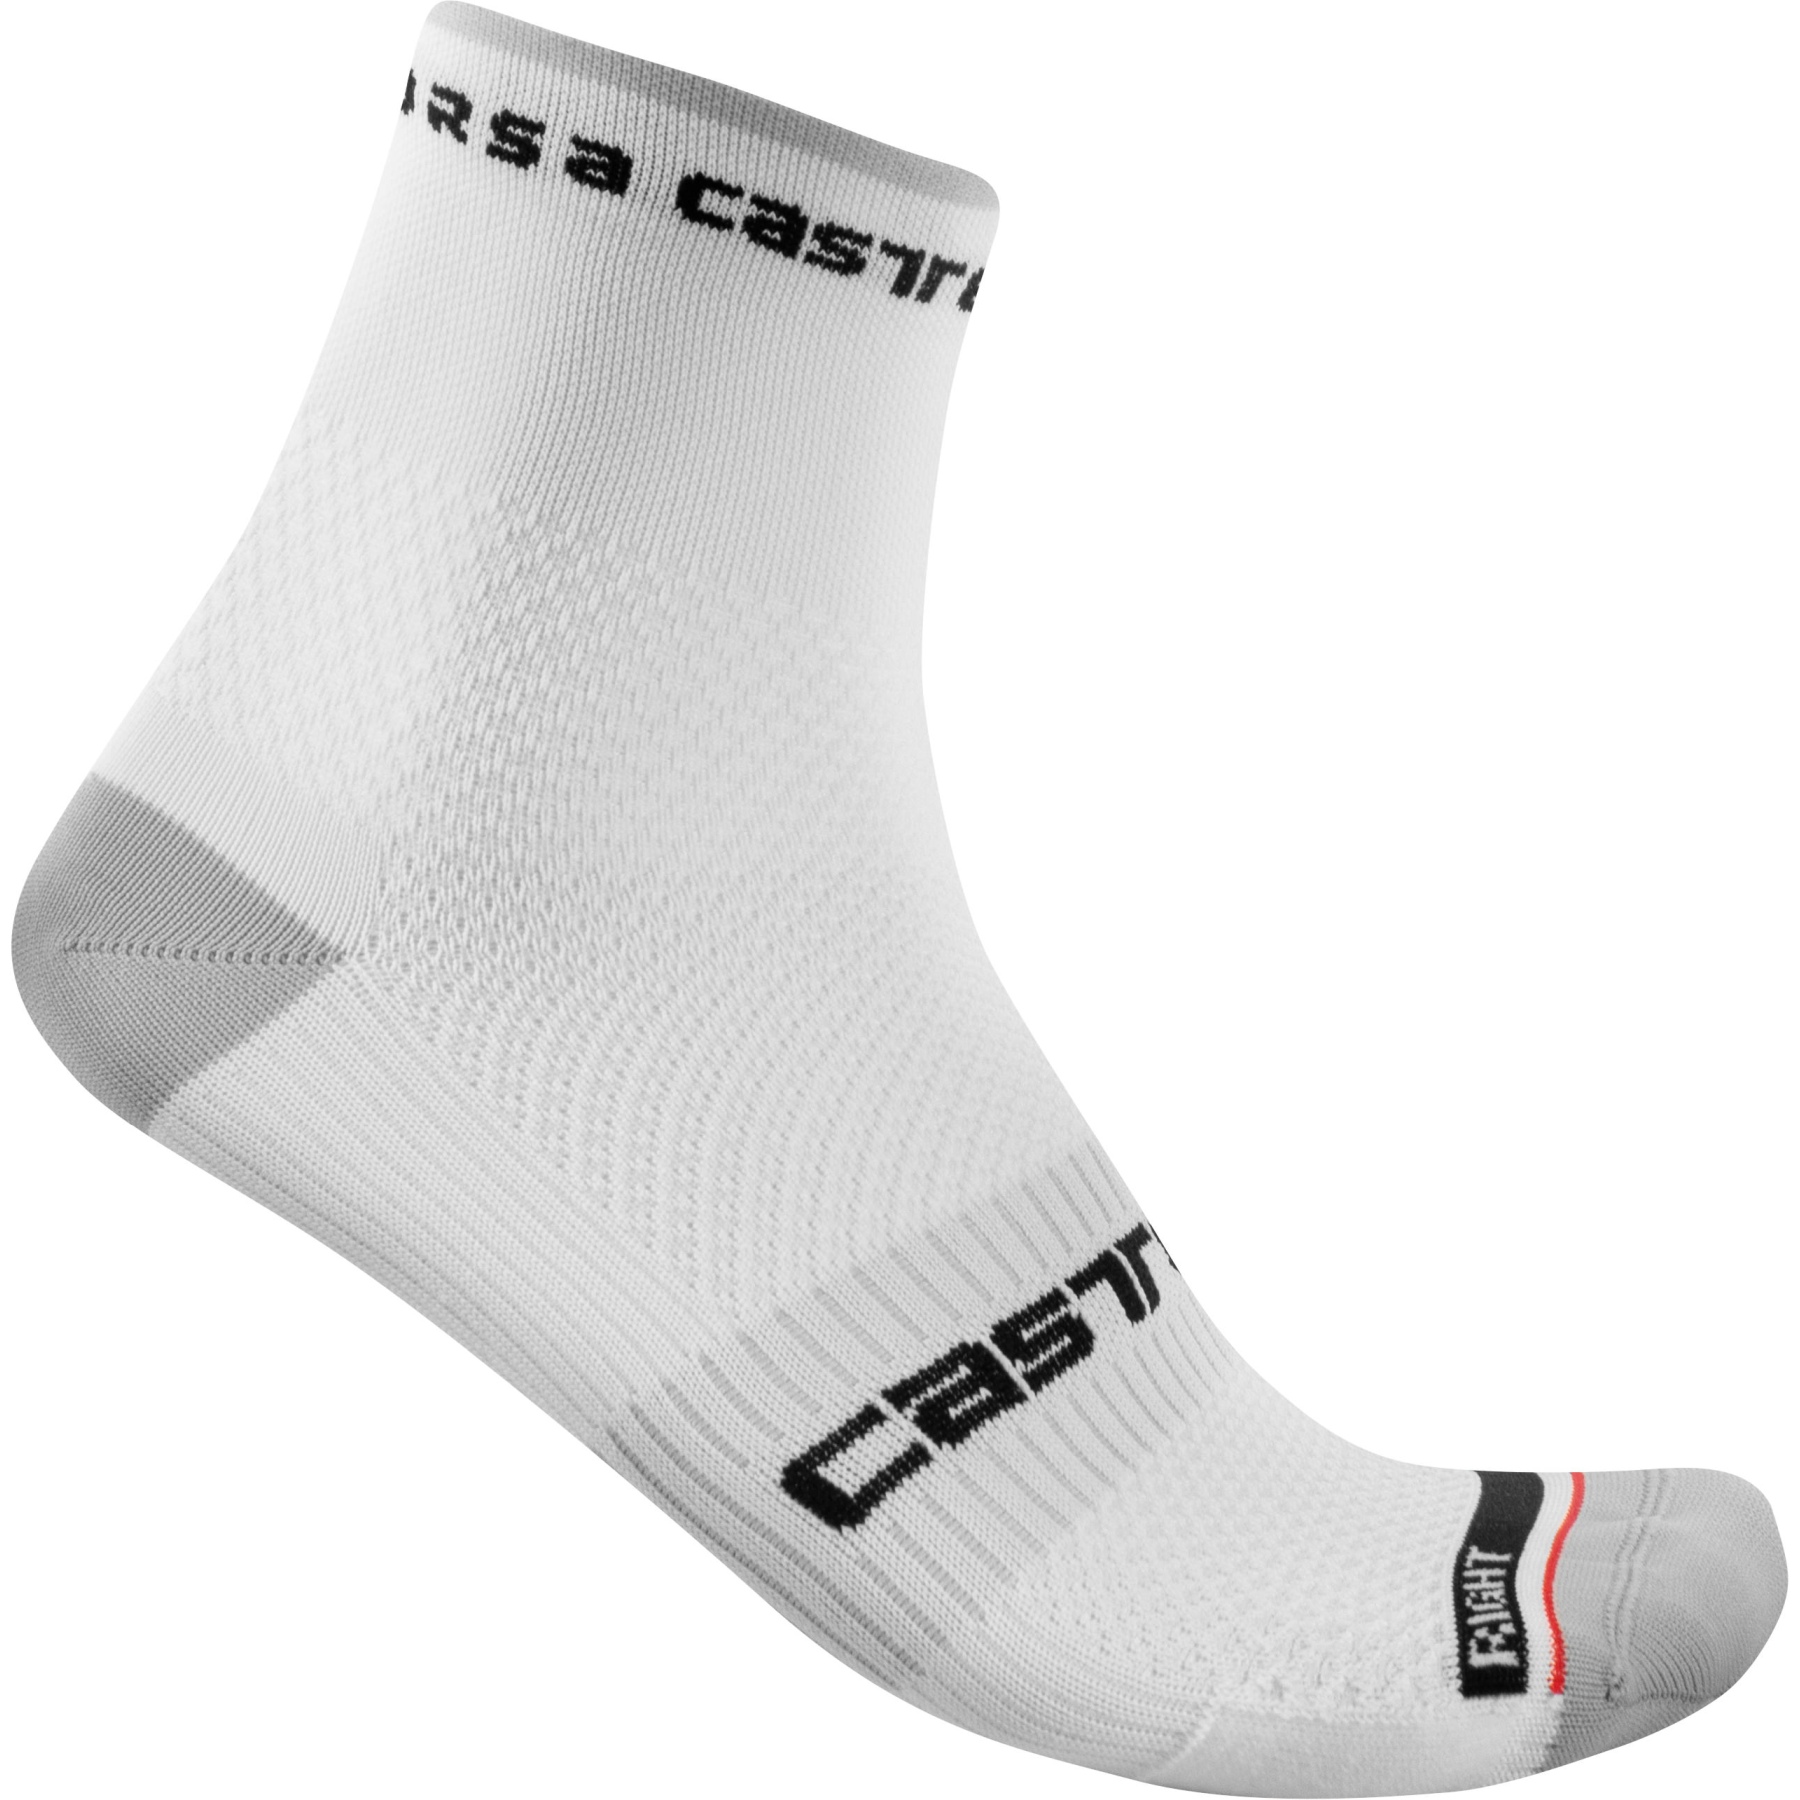 Produktbild von Castelli Rosso Corsa Pro 9 Socken - weiß 001